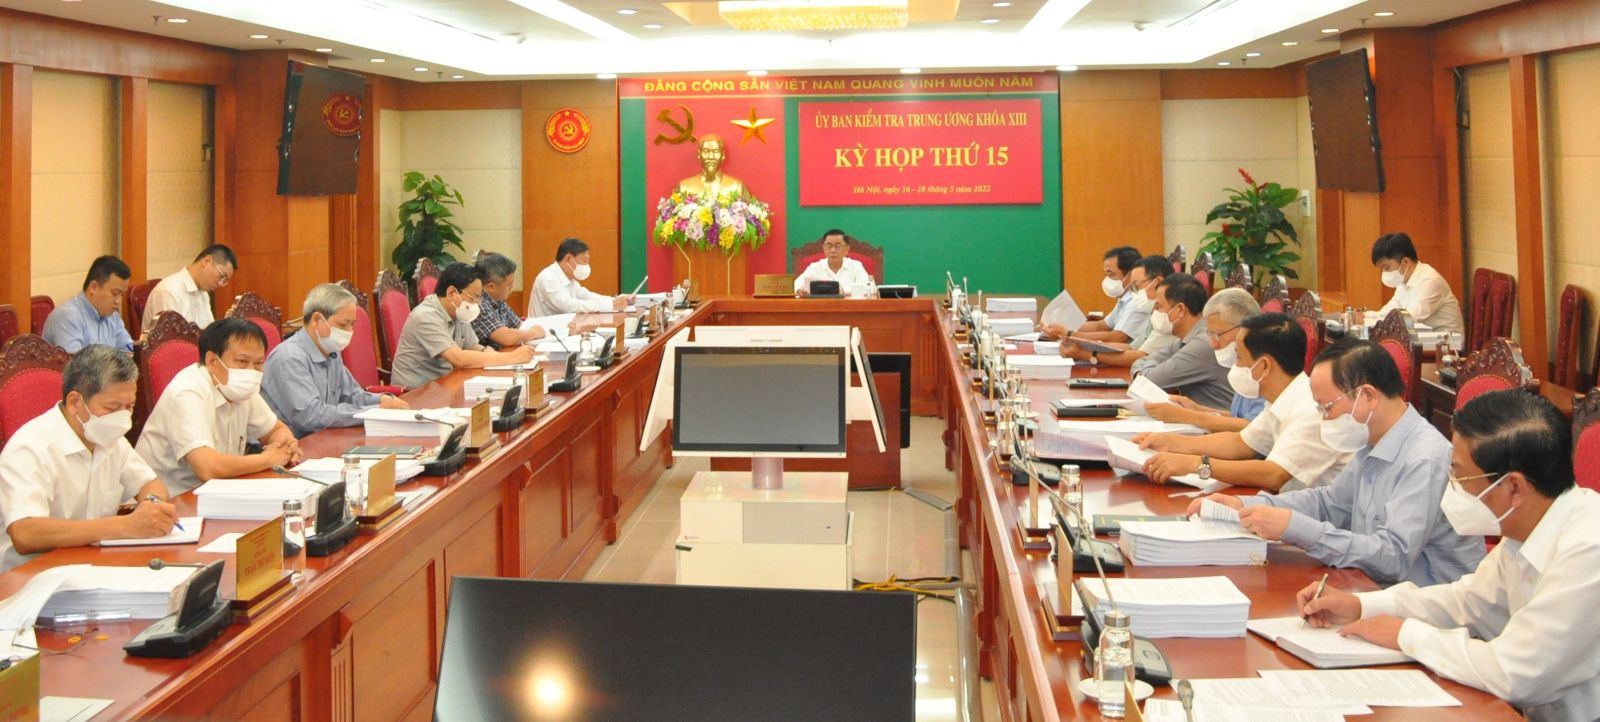 Kỷ luật cảnh cáo Thứ trưởng Bộ KH&CN Phạm Công Tạc và Thứ trưởng Bộ Y tế Nguyễn Trường Sơn - Ảnh 1.